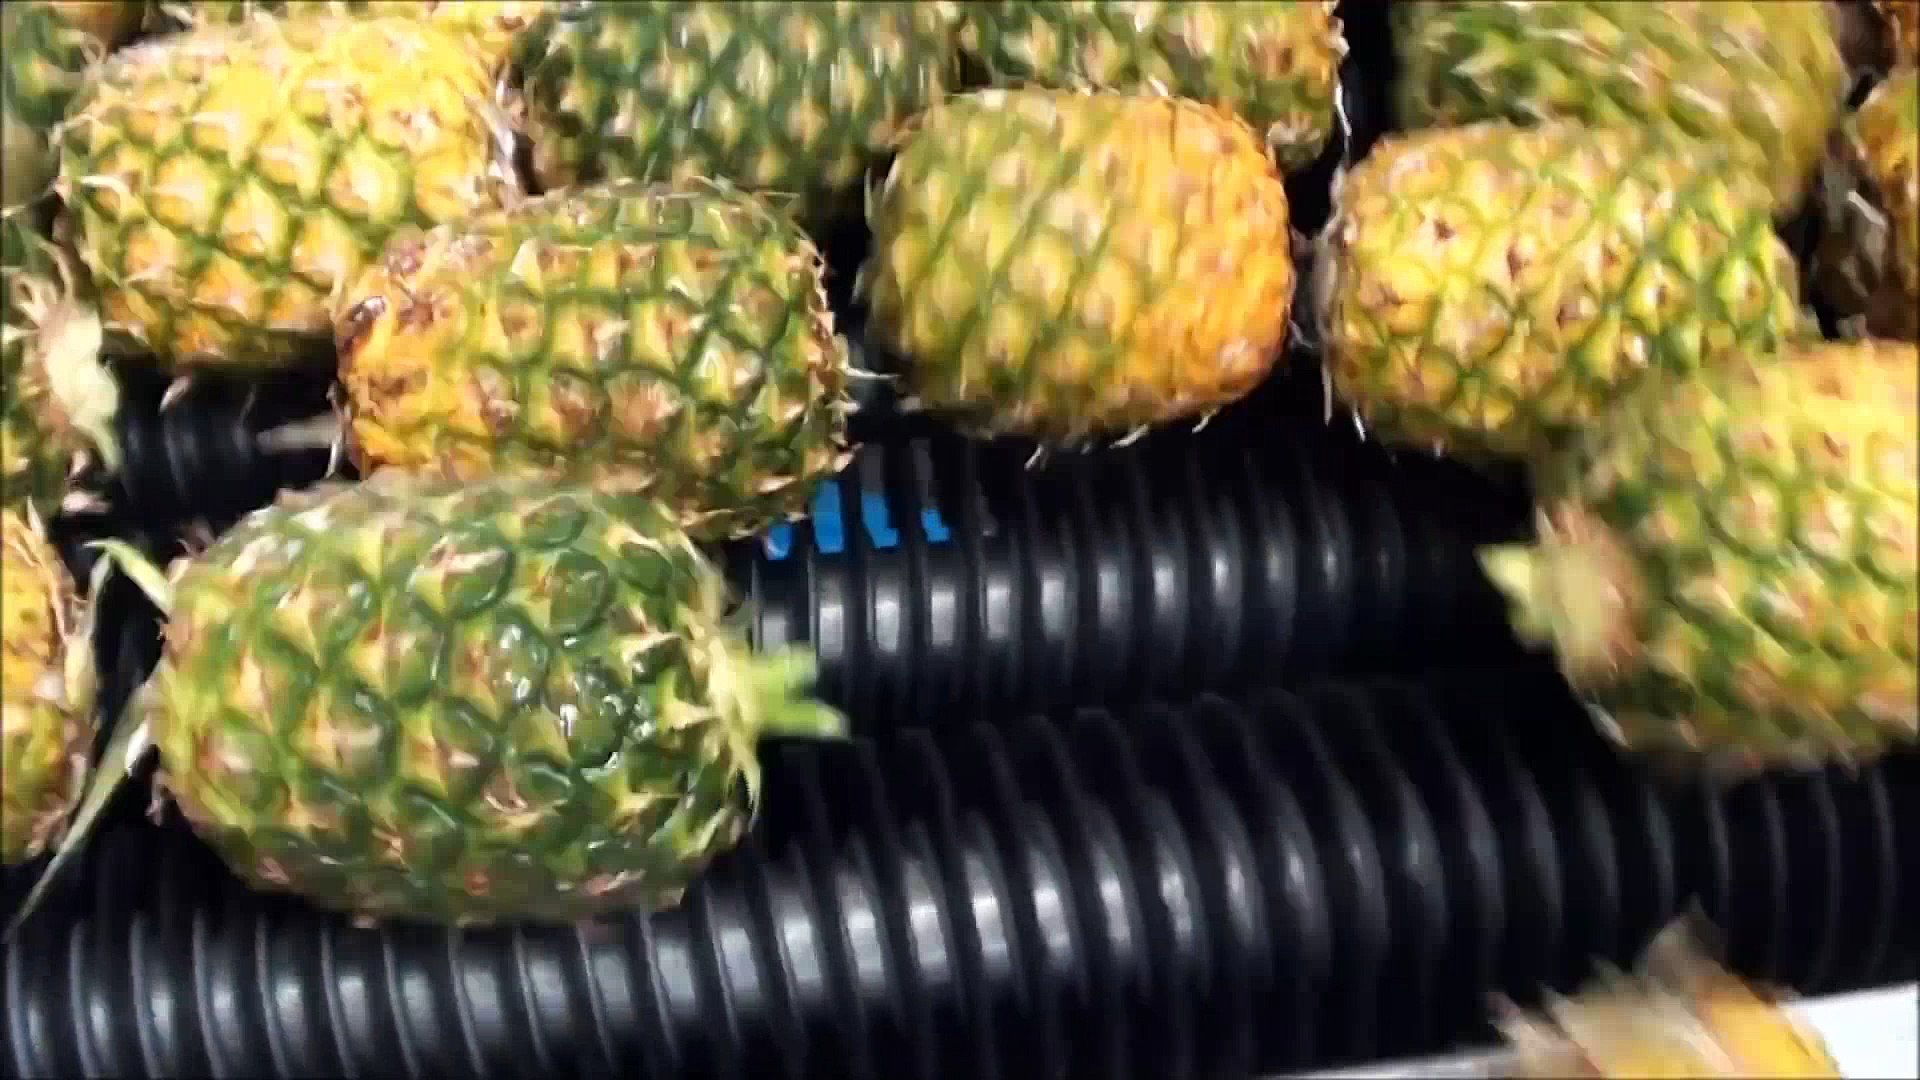 Comment est fait le jus d'ananas ? - Vidéo Dailymotion